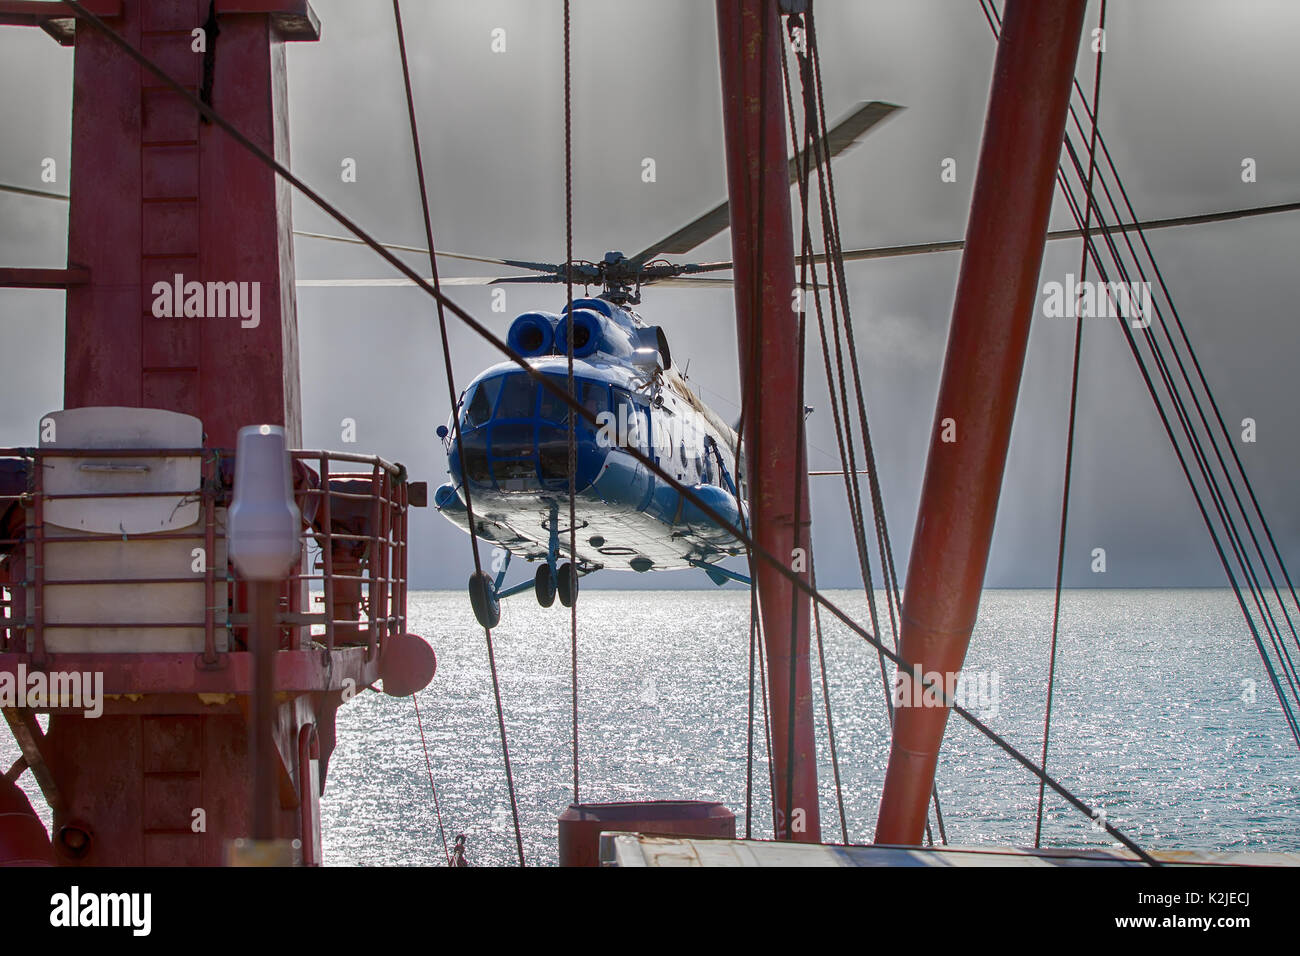 Des navires en état de naviguer, d'hélicoptère Hélicoptère. Hélicoptère décolle du pont du brise-glace avec objectif d'explorateurs d'atterrissage Banque D'Images